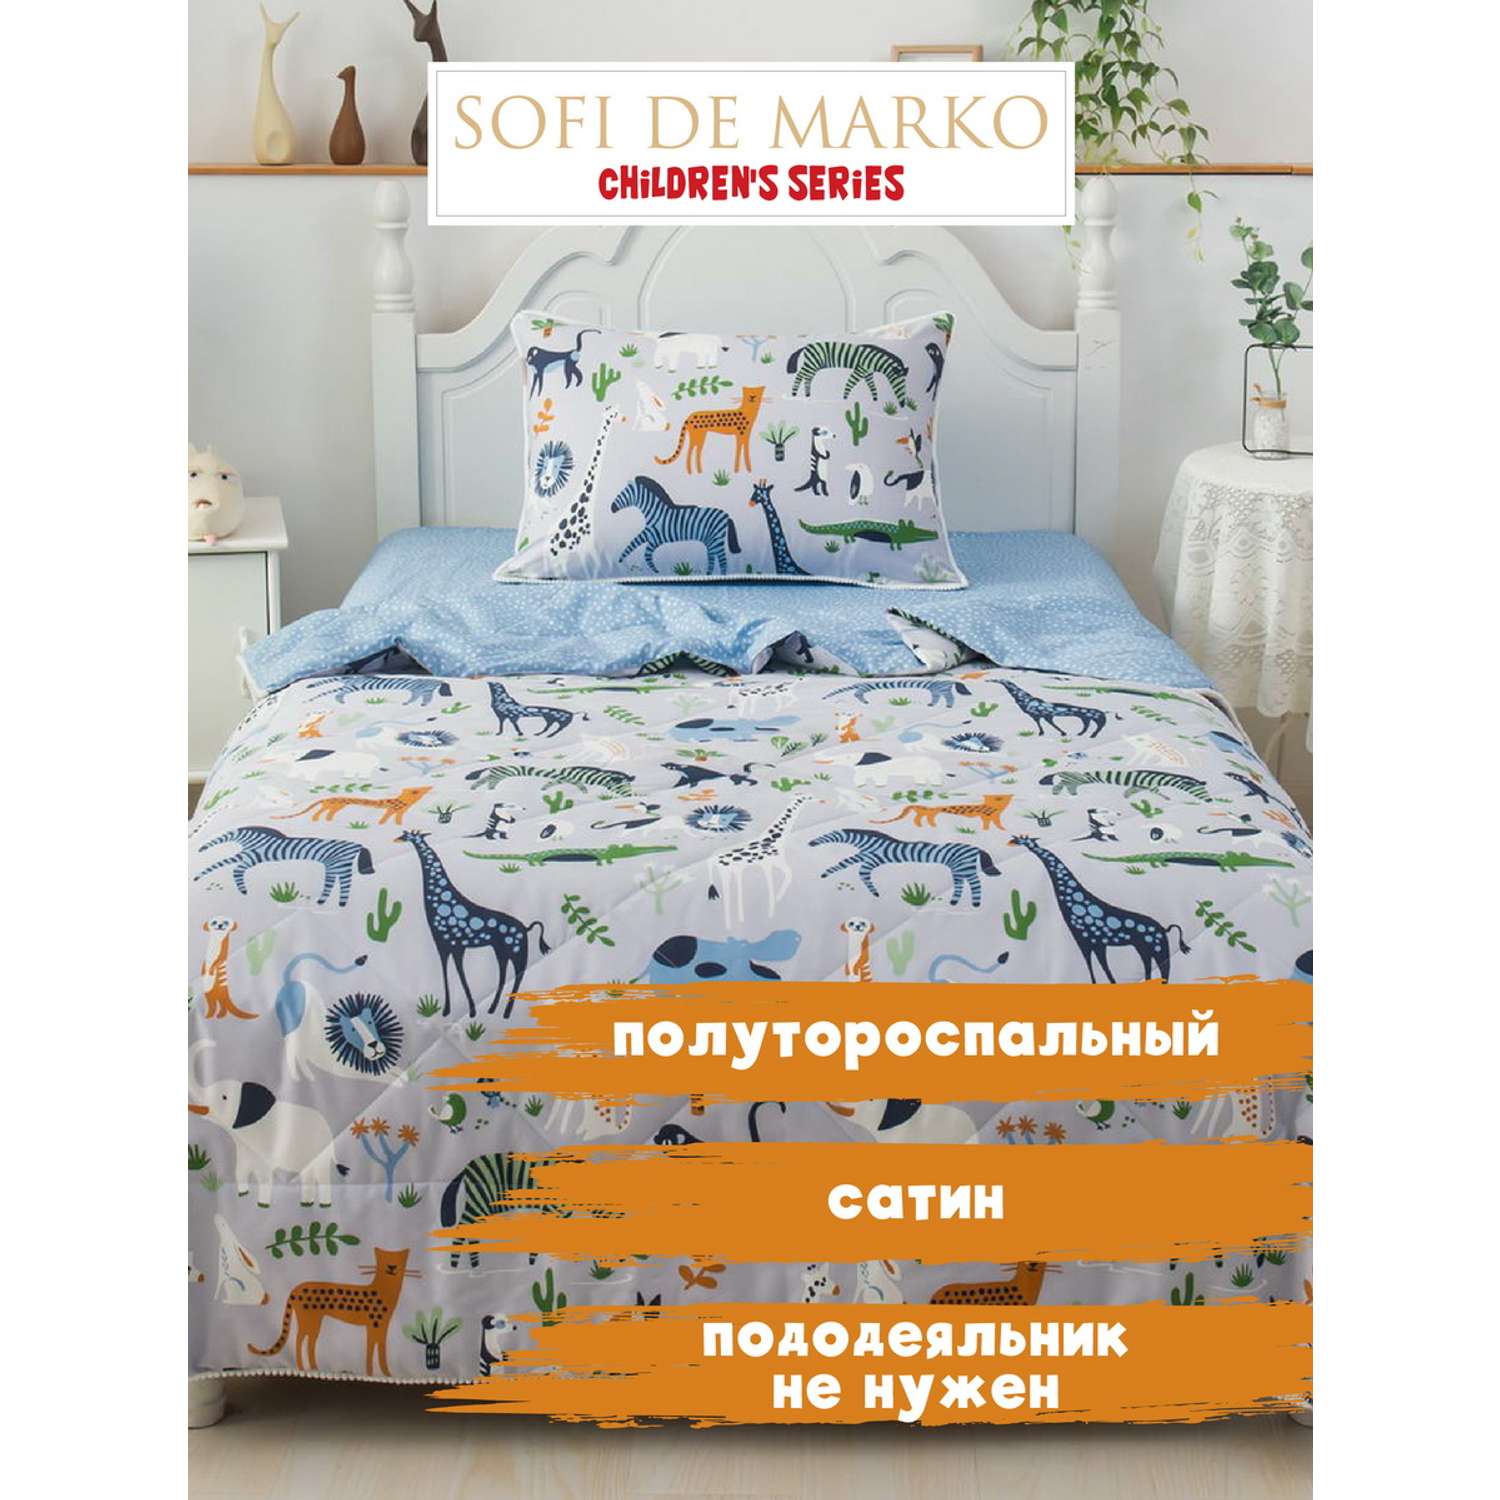 Комплект постельного белья Sofi de Marko Саванна синий детский с одеялом - фото 2